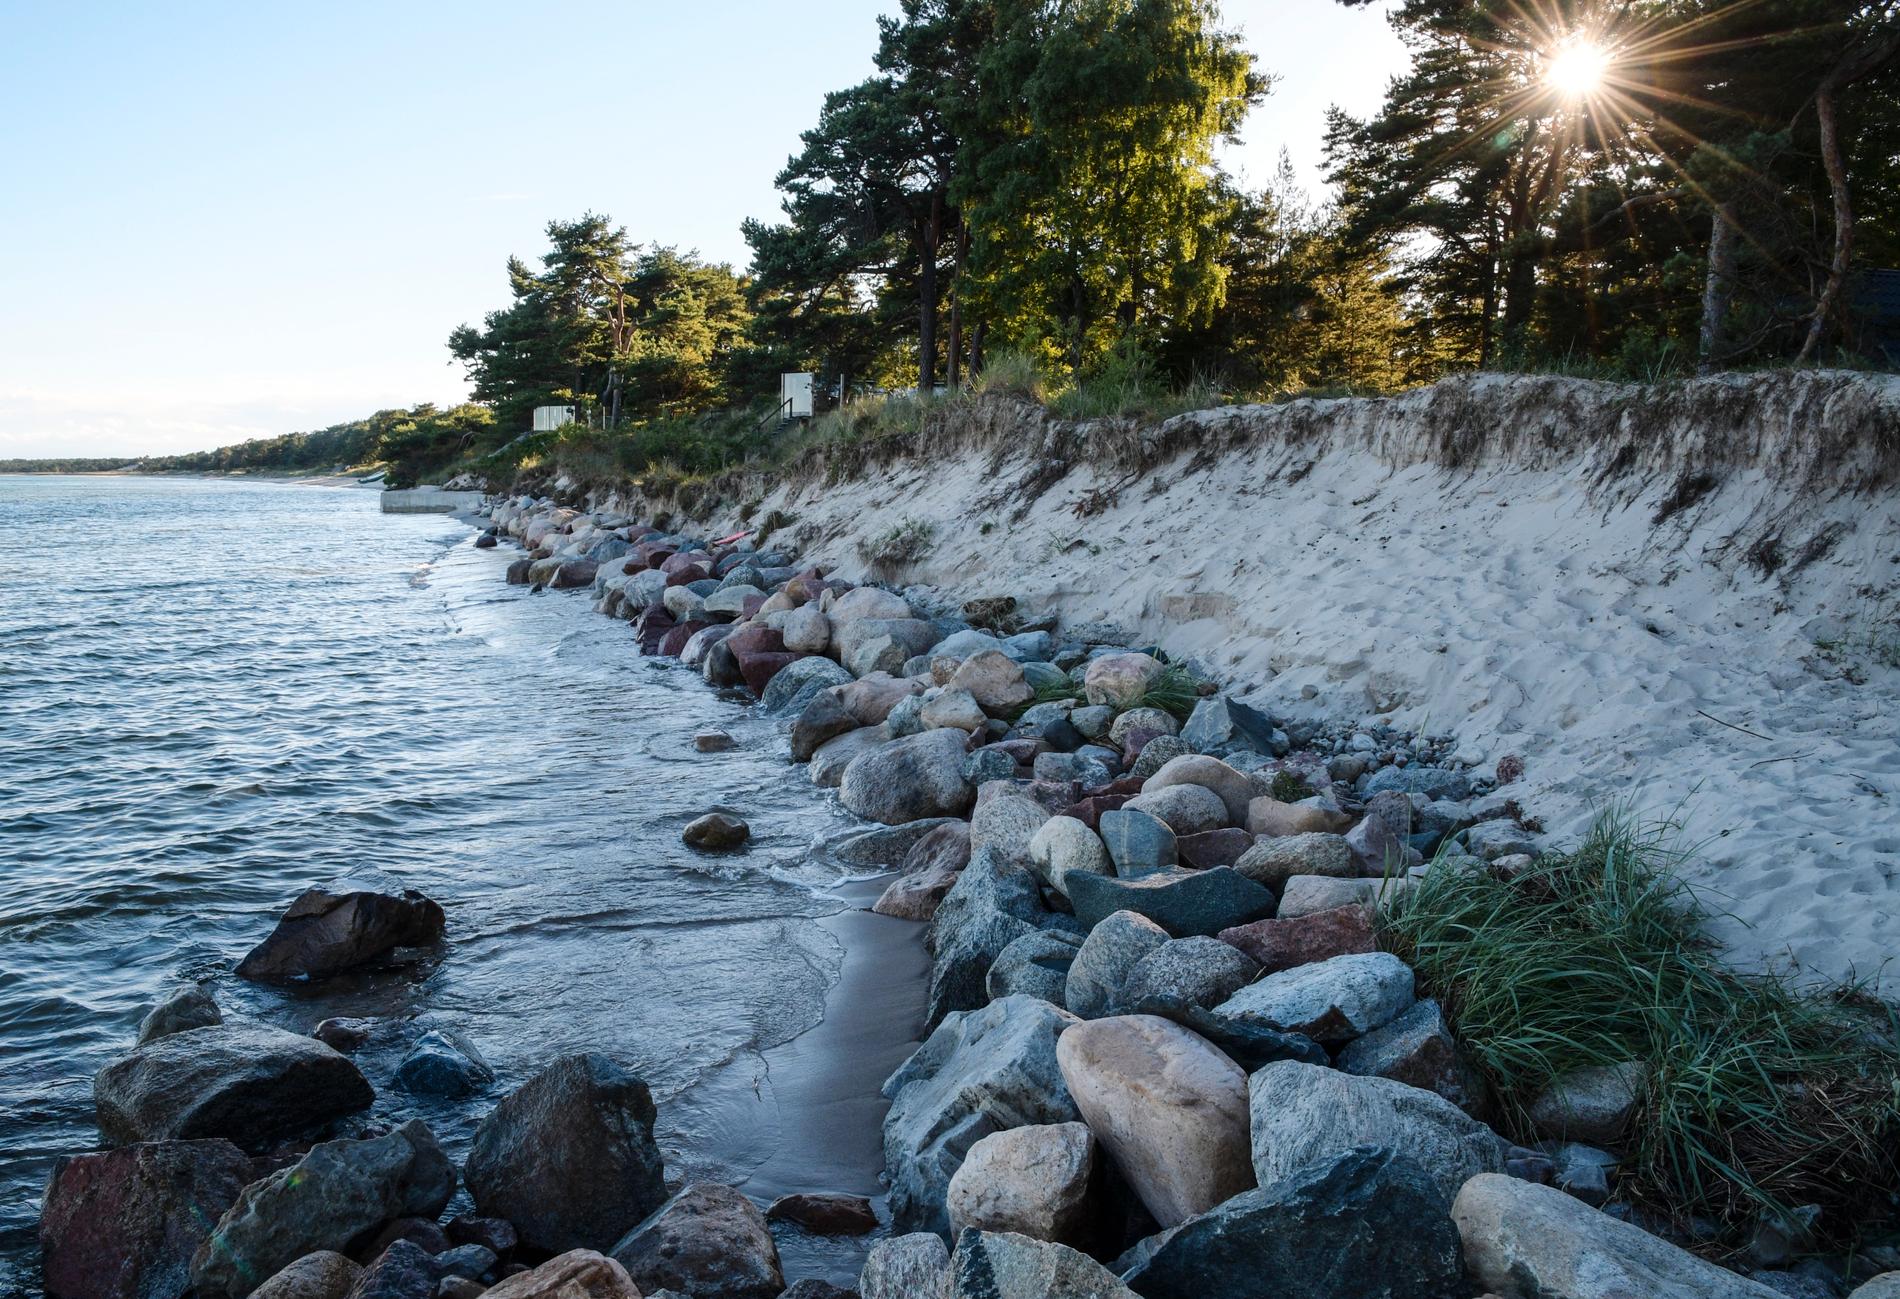 Vid Strandvägen i Äspet i Åhus når havet ända upp till skogsbrynet. Stranderosion runt Skånes kust blir ett alltmer påträngande problem. Arkivbild.